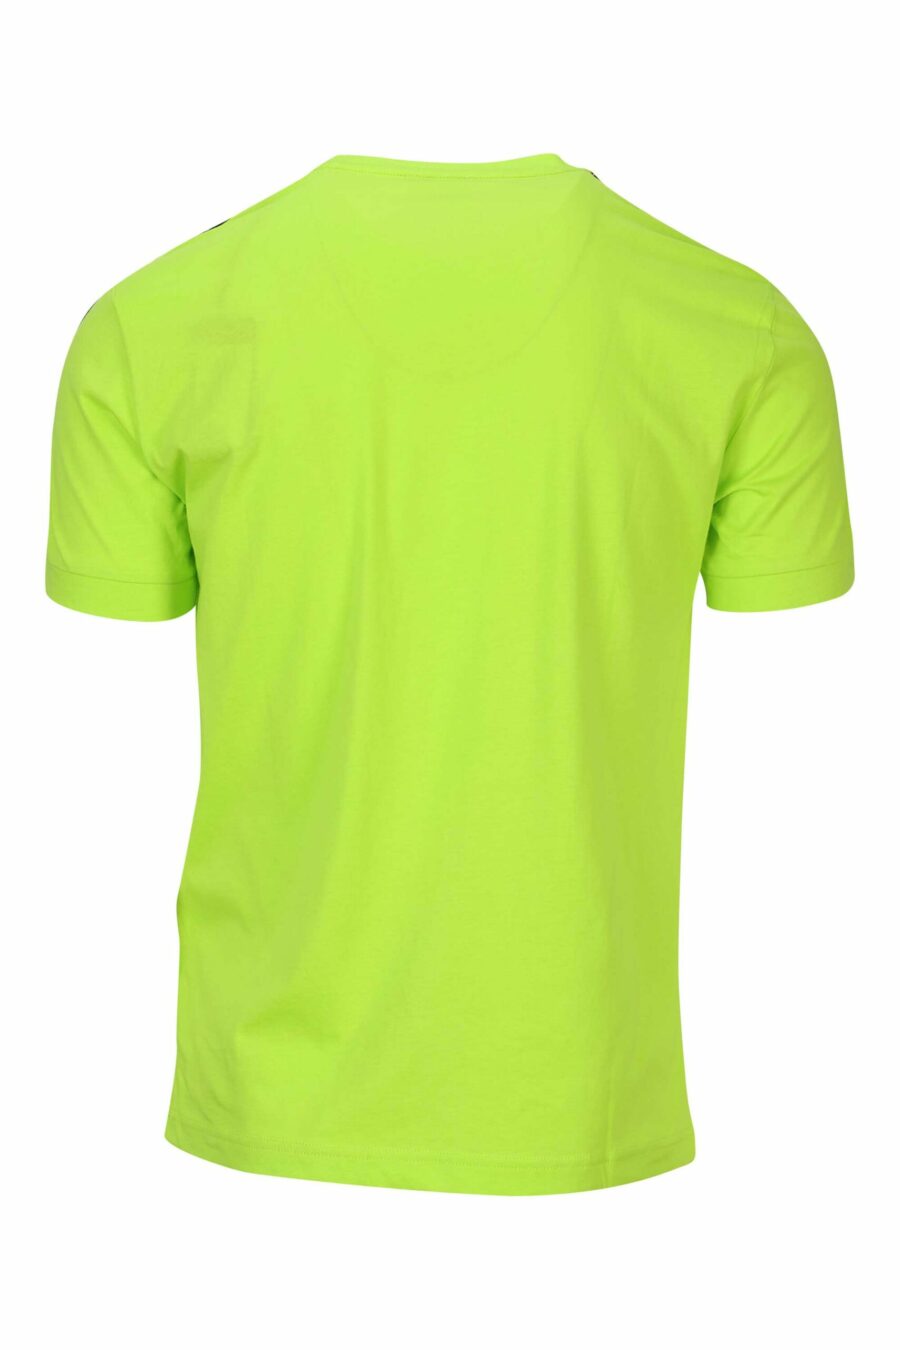 Limonengrünes T-Shirt mit schwarzem Mini-Logo-Band "lux identity" - 8058947490943 1 skaliert